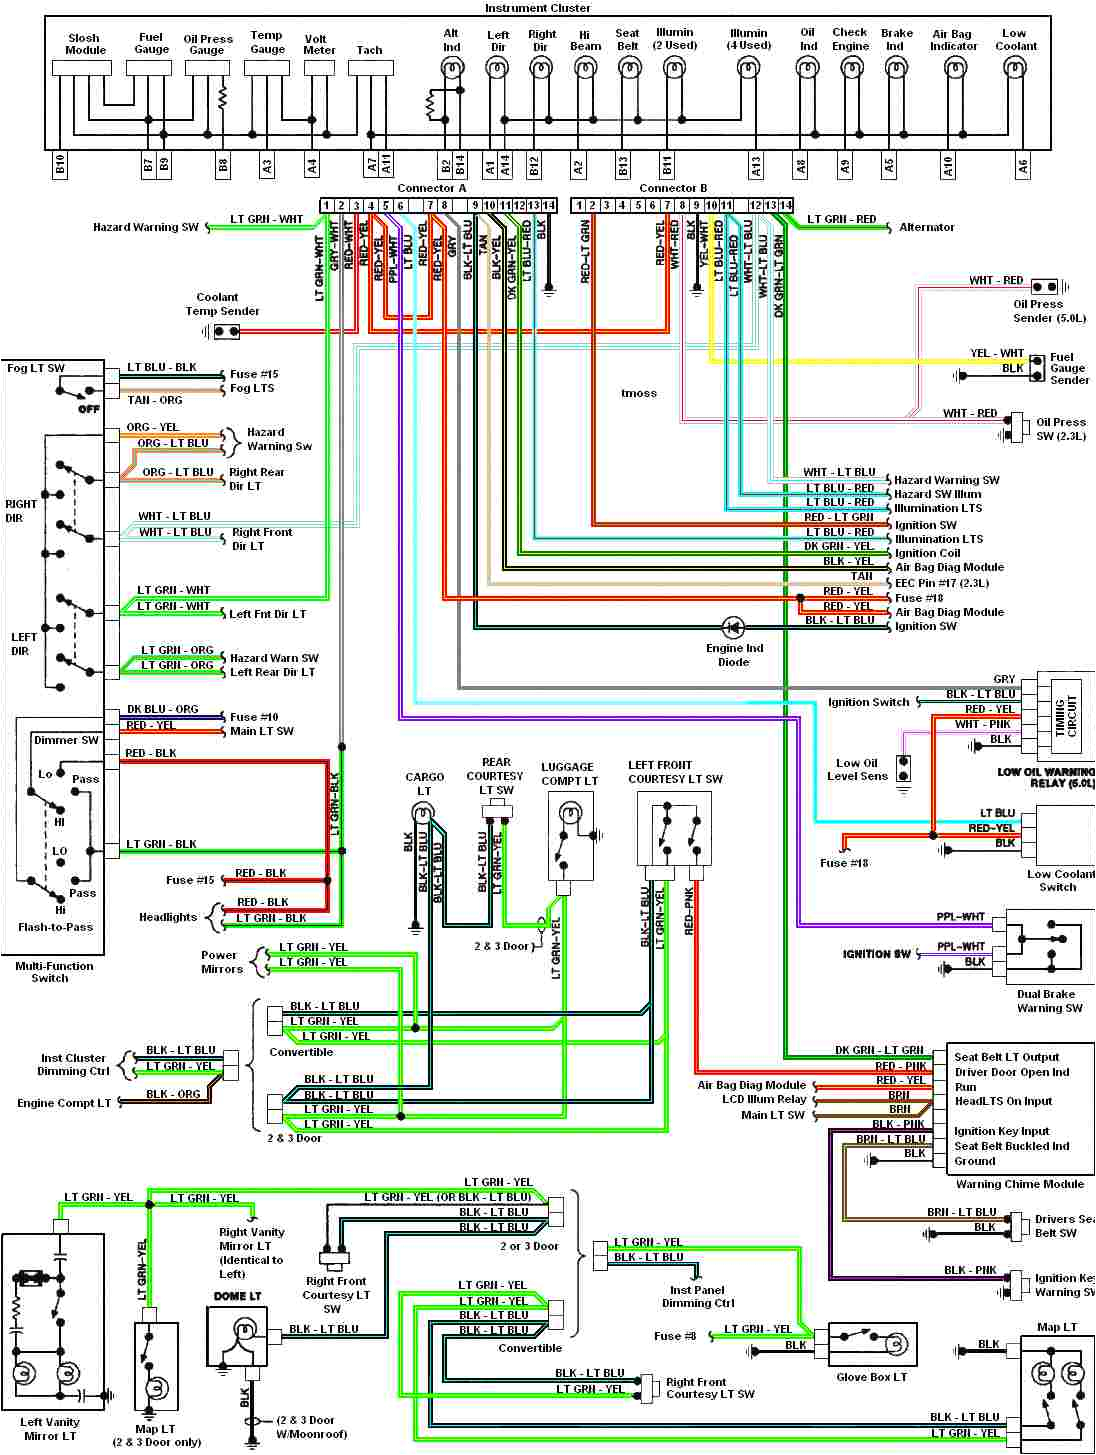 2002 mustang wiring diagram wiring diagram blog headlight wiring diagram 2002 mustang gt